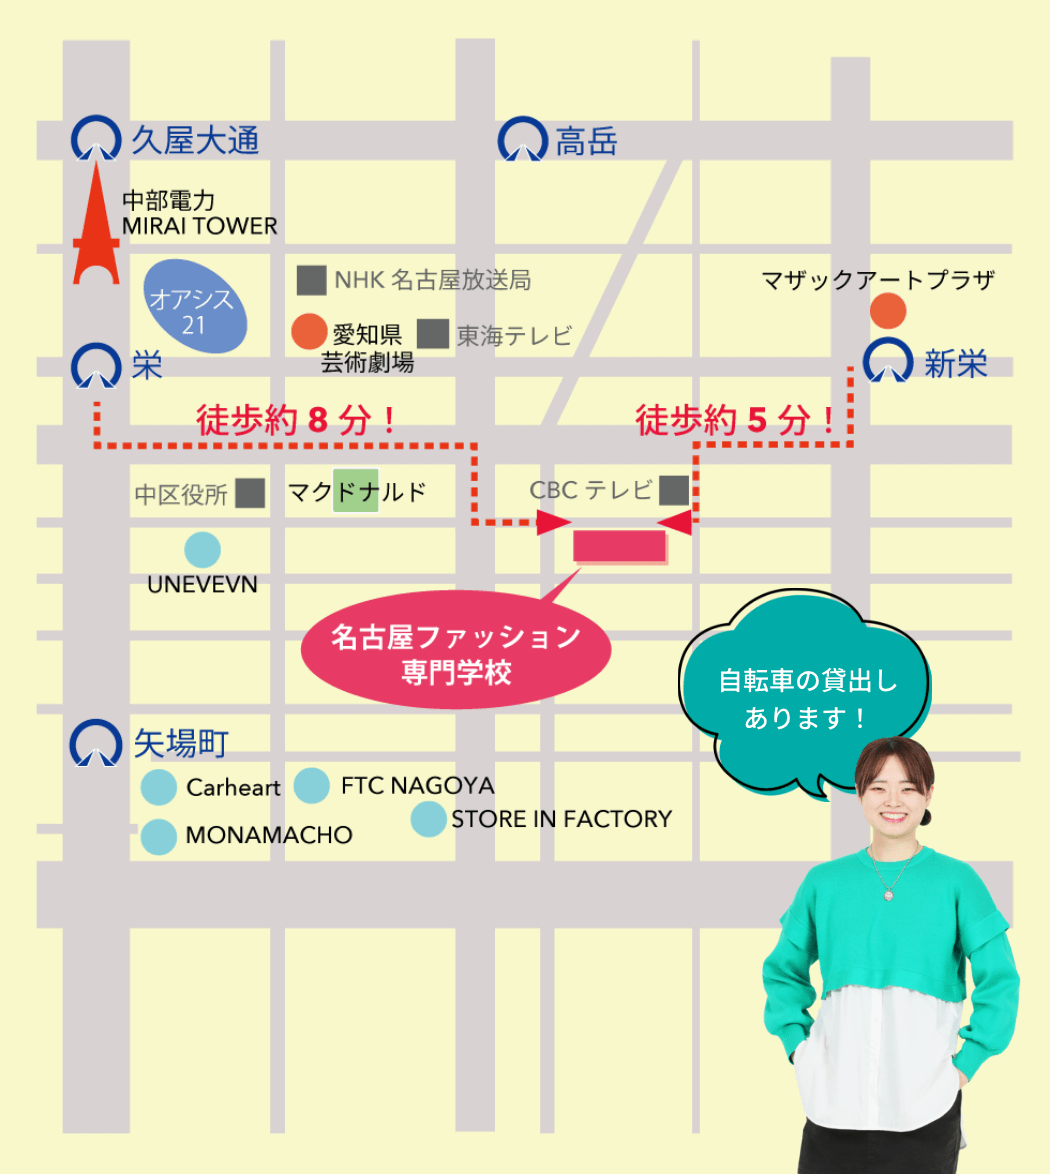 栄から名古屋ファッション専門学校まで徒歩約8分。新栄から名古屋ファッション専門学校まで徒歩約5分。自転車の貸出しあります